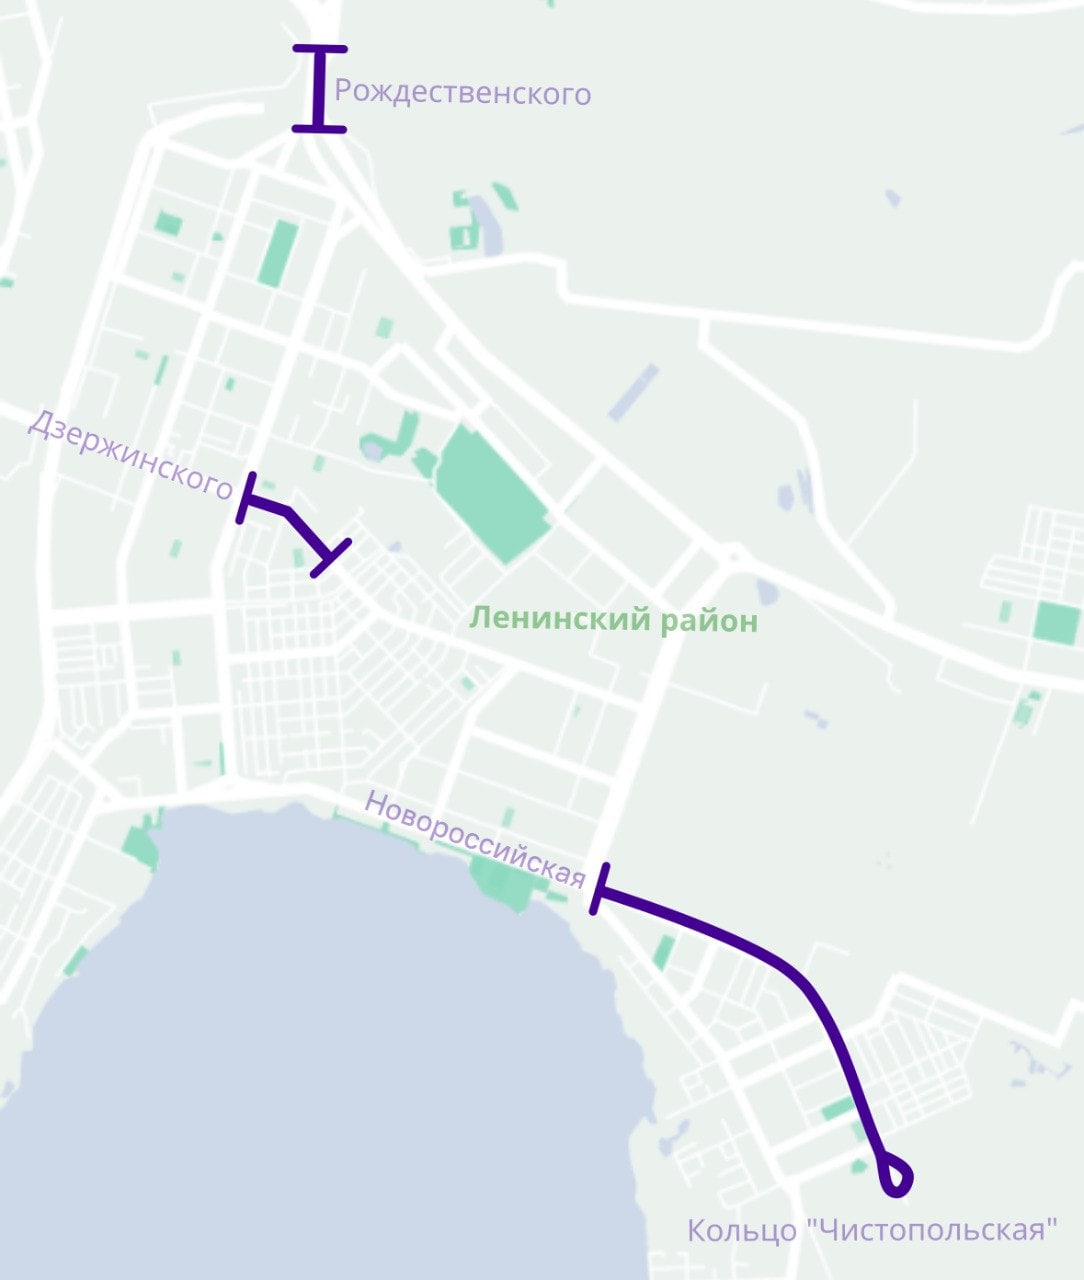 Определен подрядчик, который займется капитальным ремонтом трамвайных путей в Челябинске